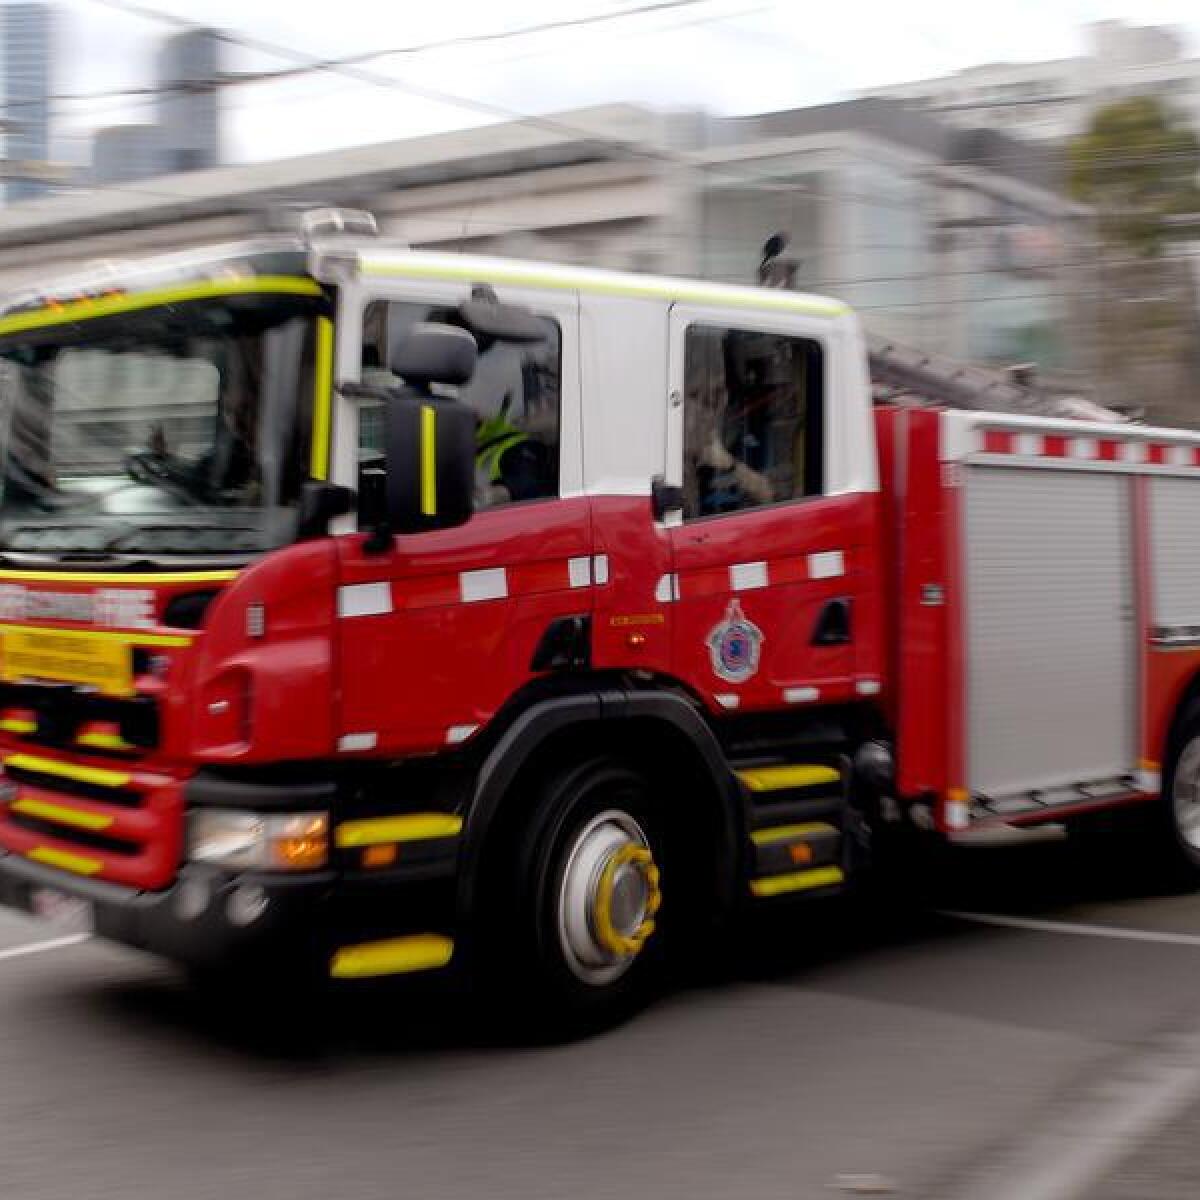 A fire truck in Melbourne